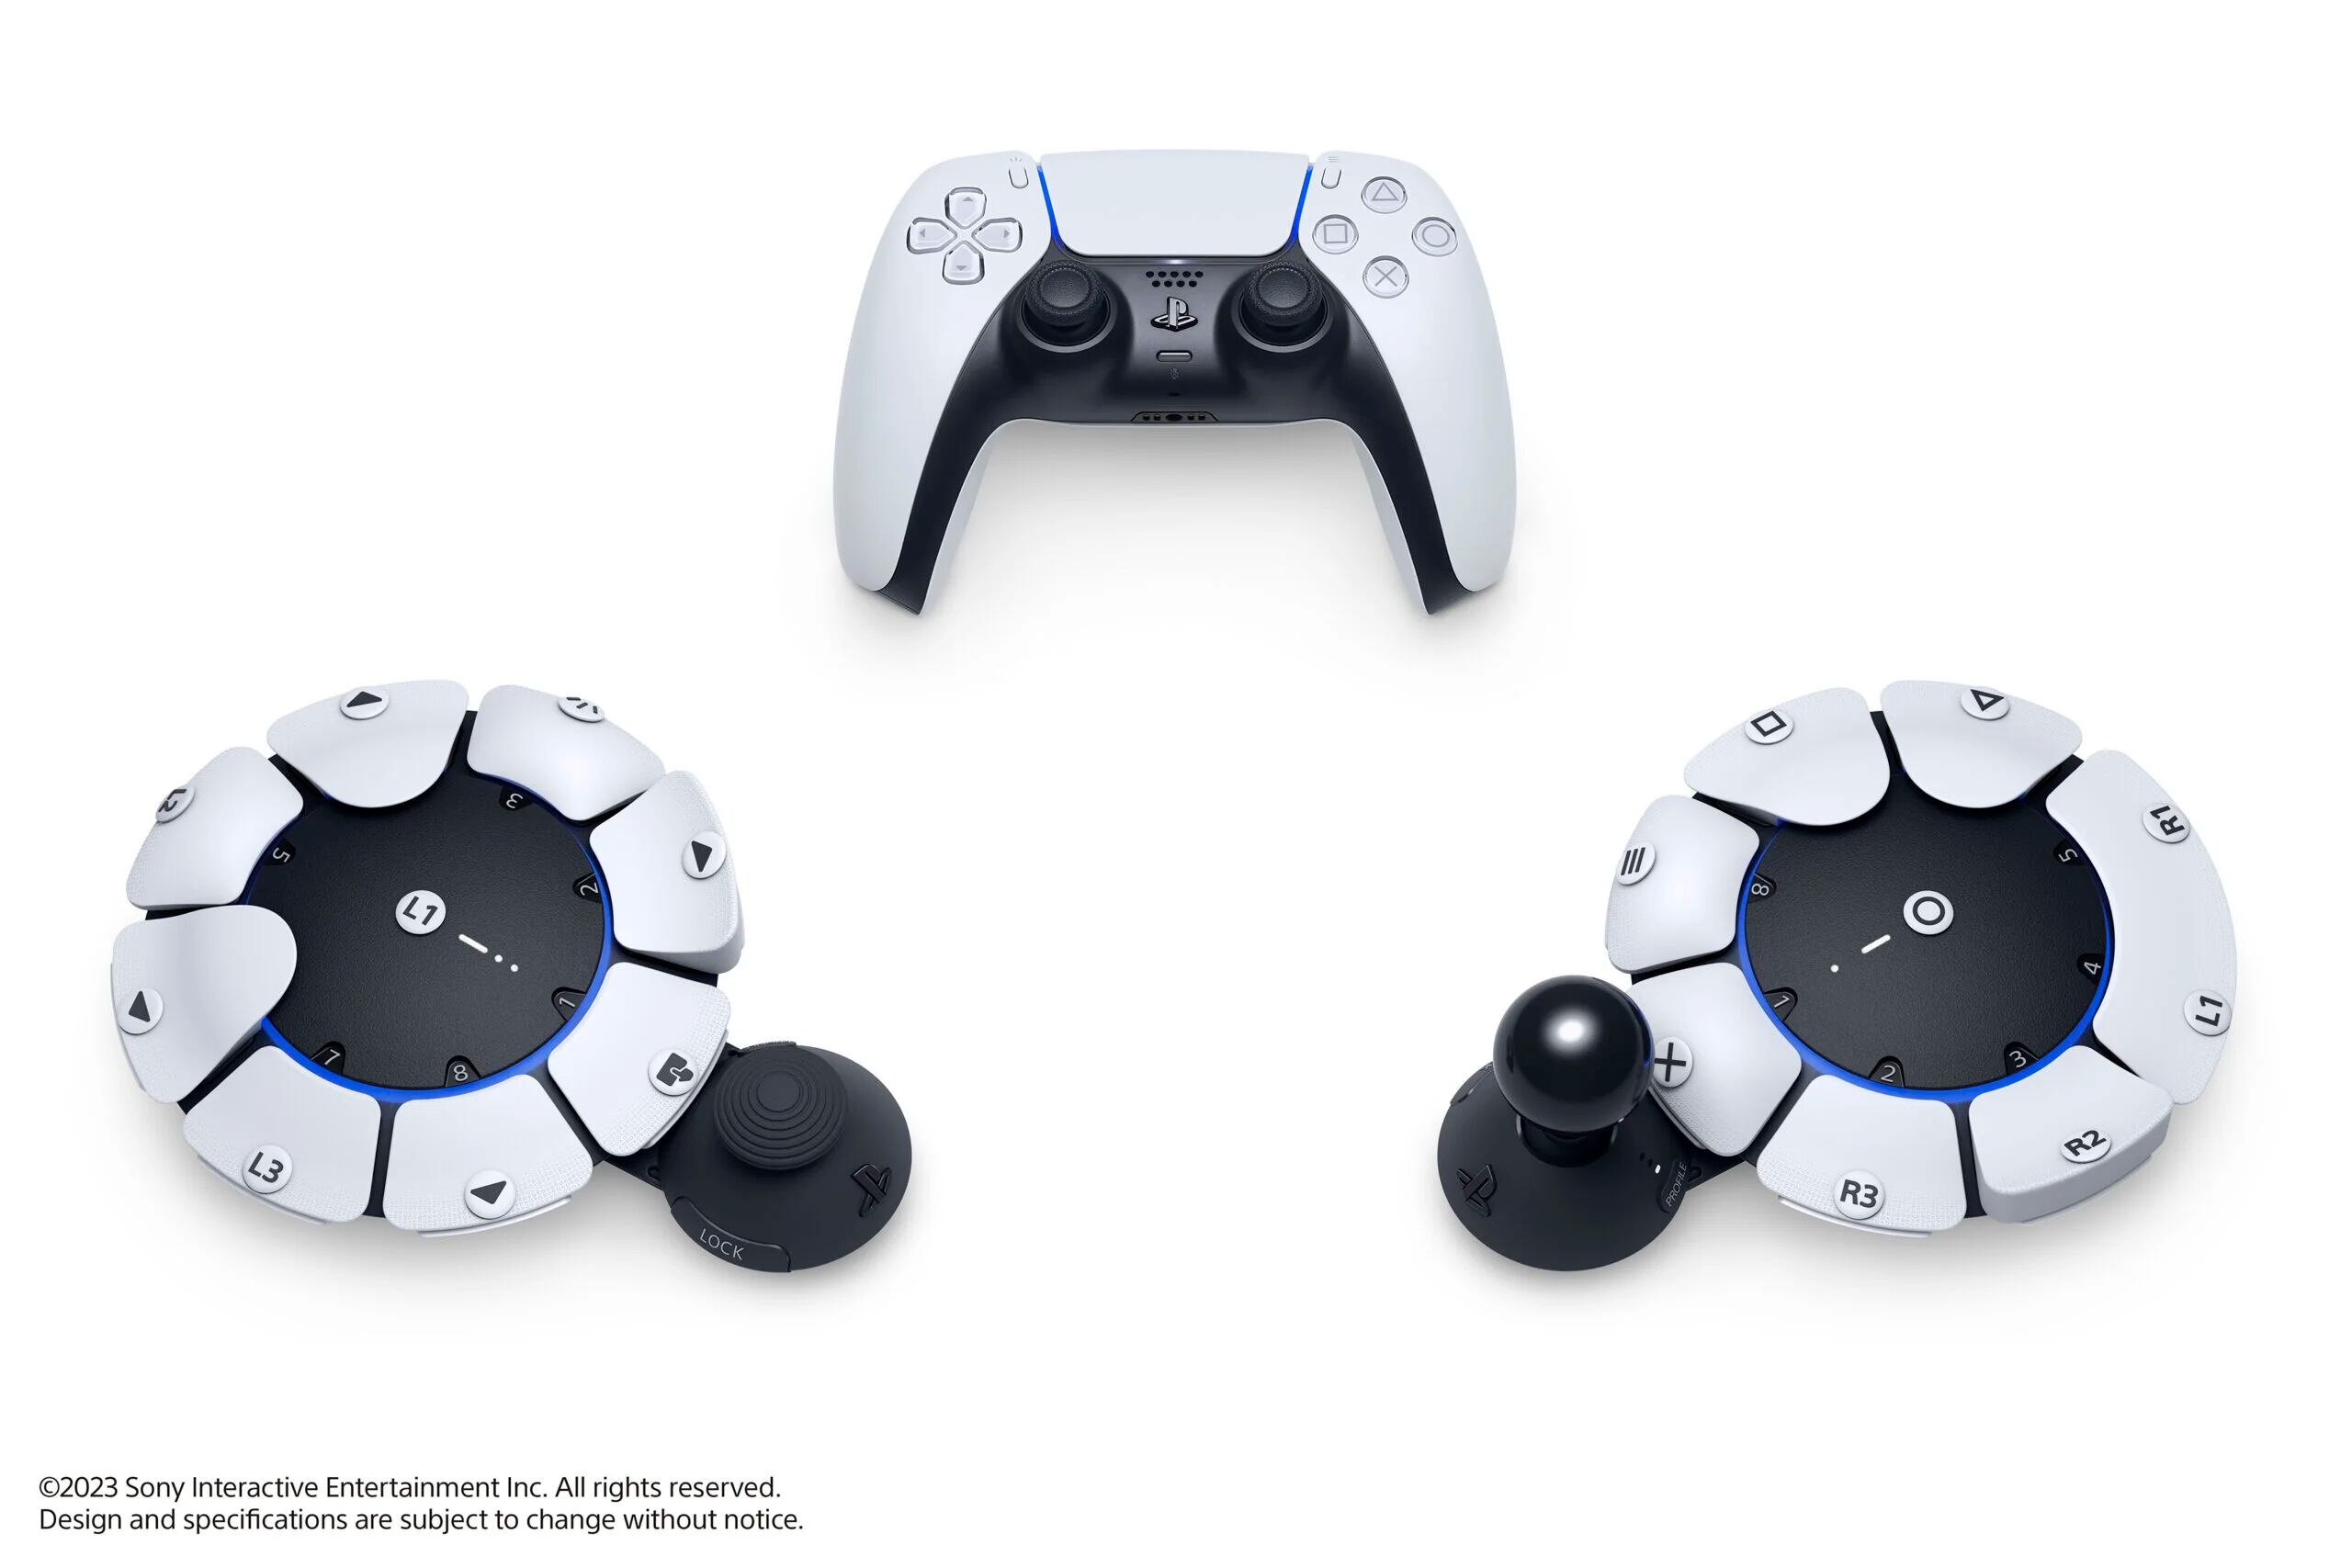 Se anuncia nuevo control pro para el PlayStation 5